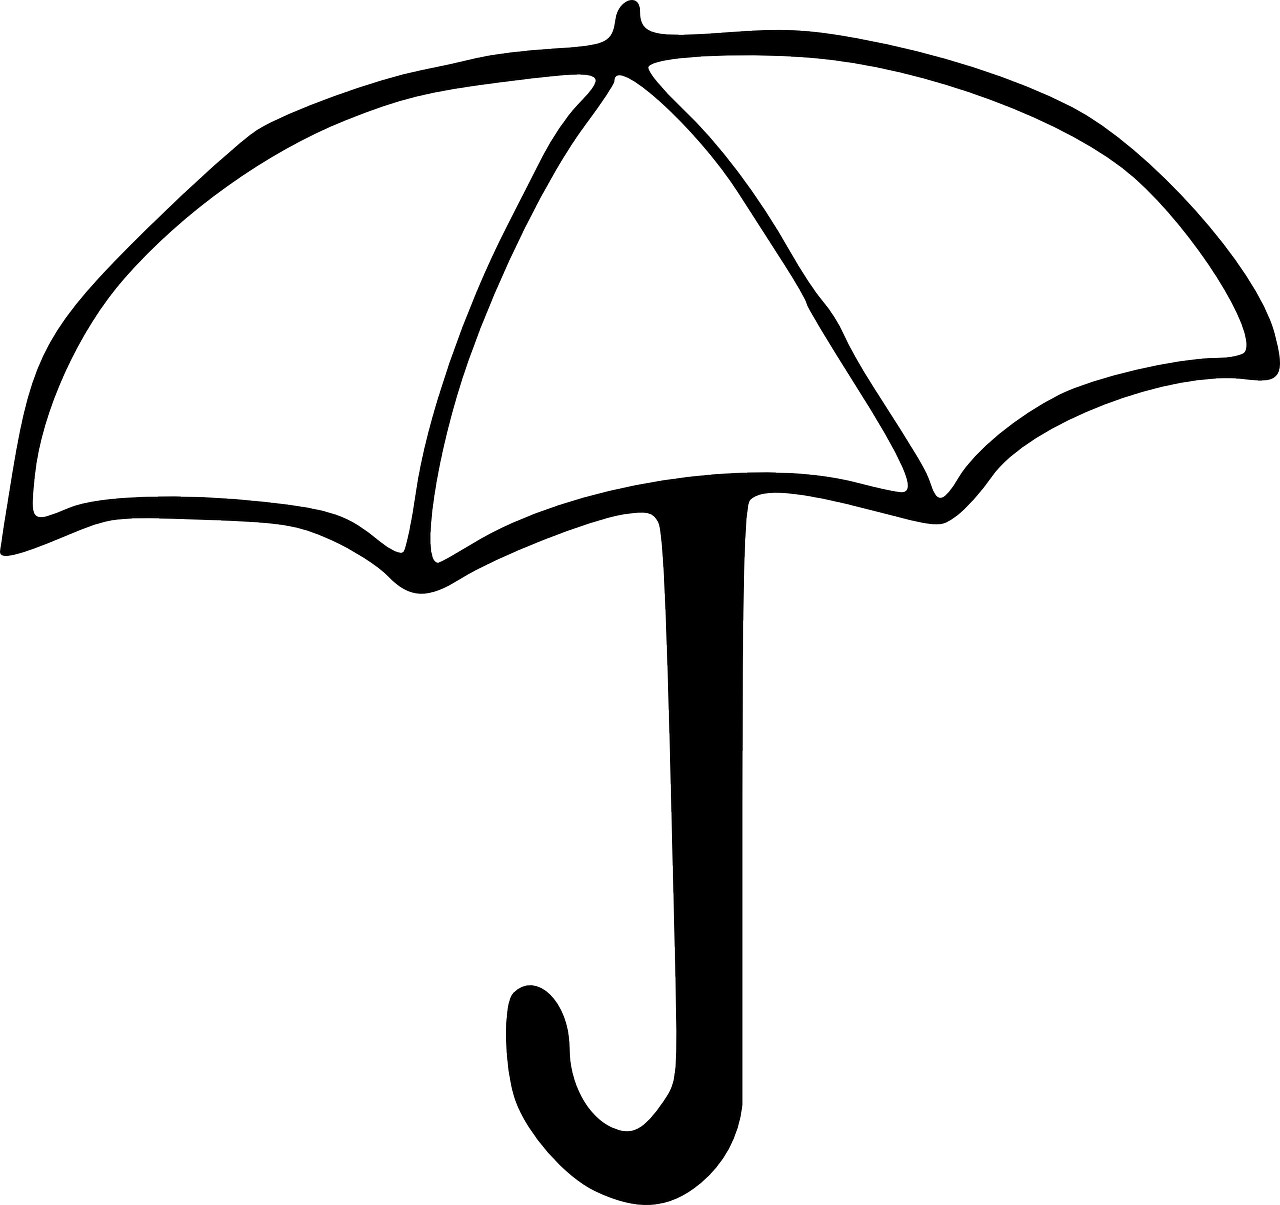 Зонт рисунок